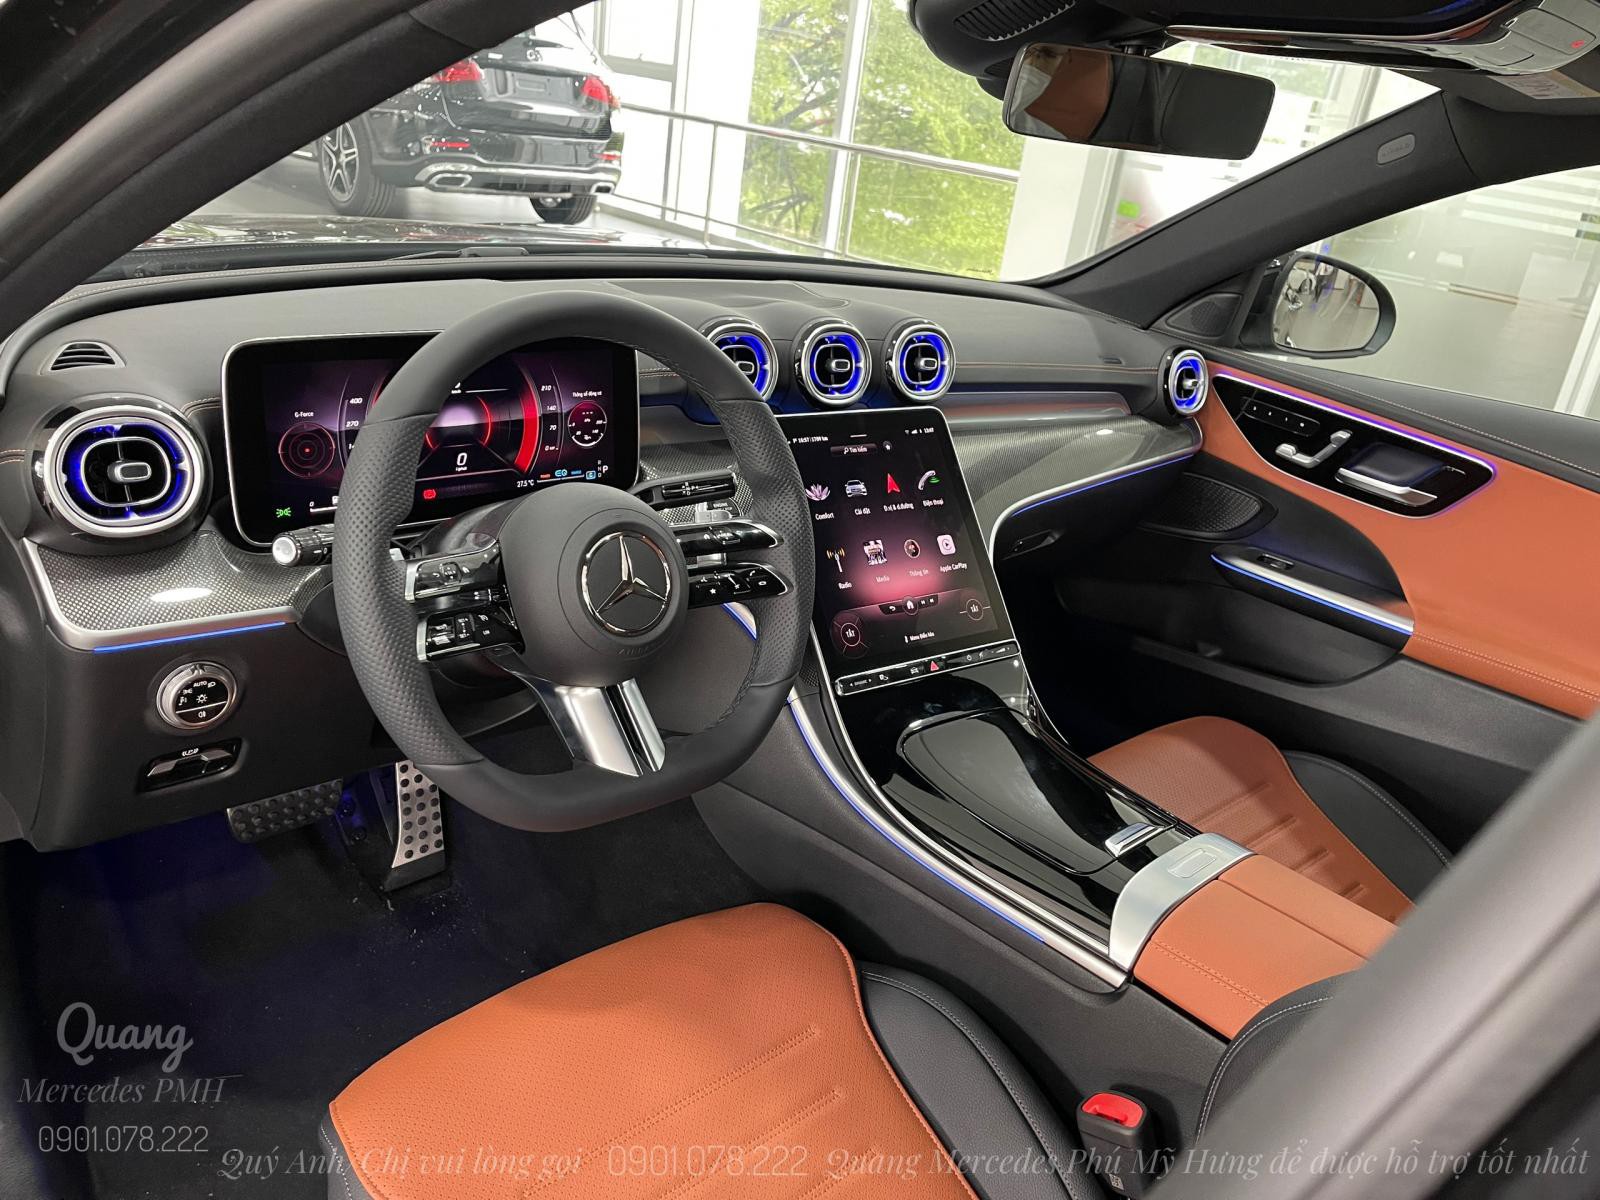 Mercedes C300 AMG 2022 | Cọc sớm nhận xe Quận 9 | Trả góp tới 80% | Lãi suất hấp dẫn| Quang 0901 078 222